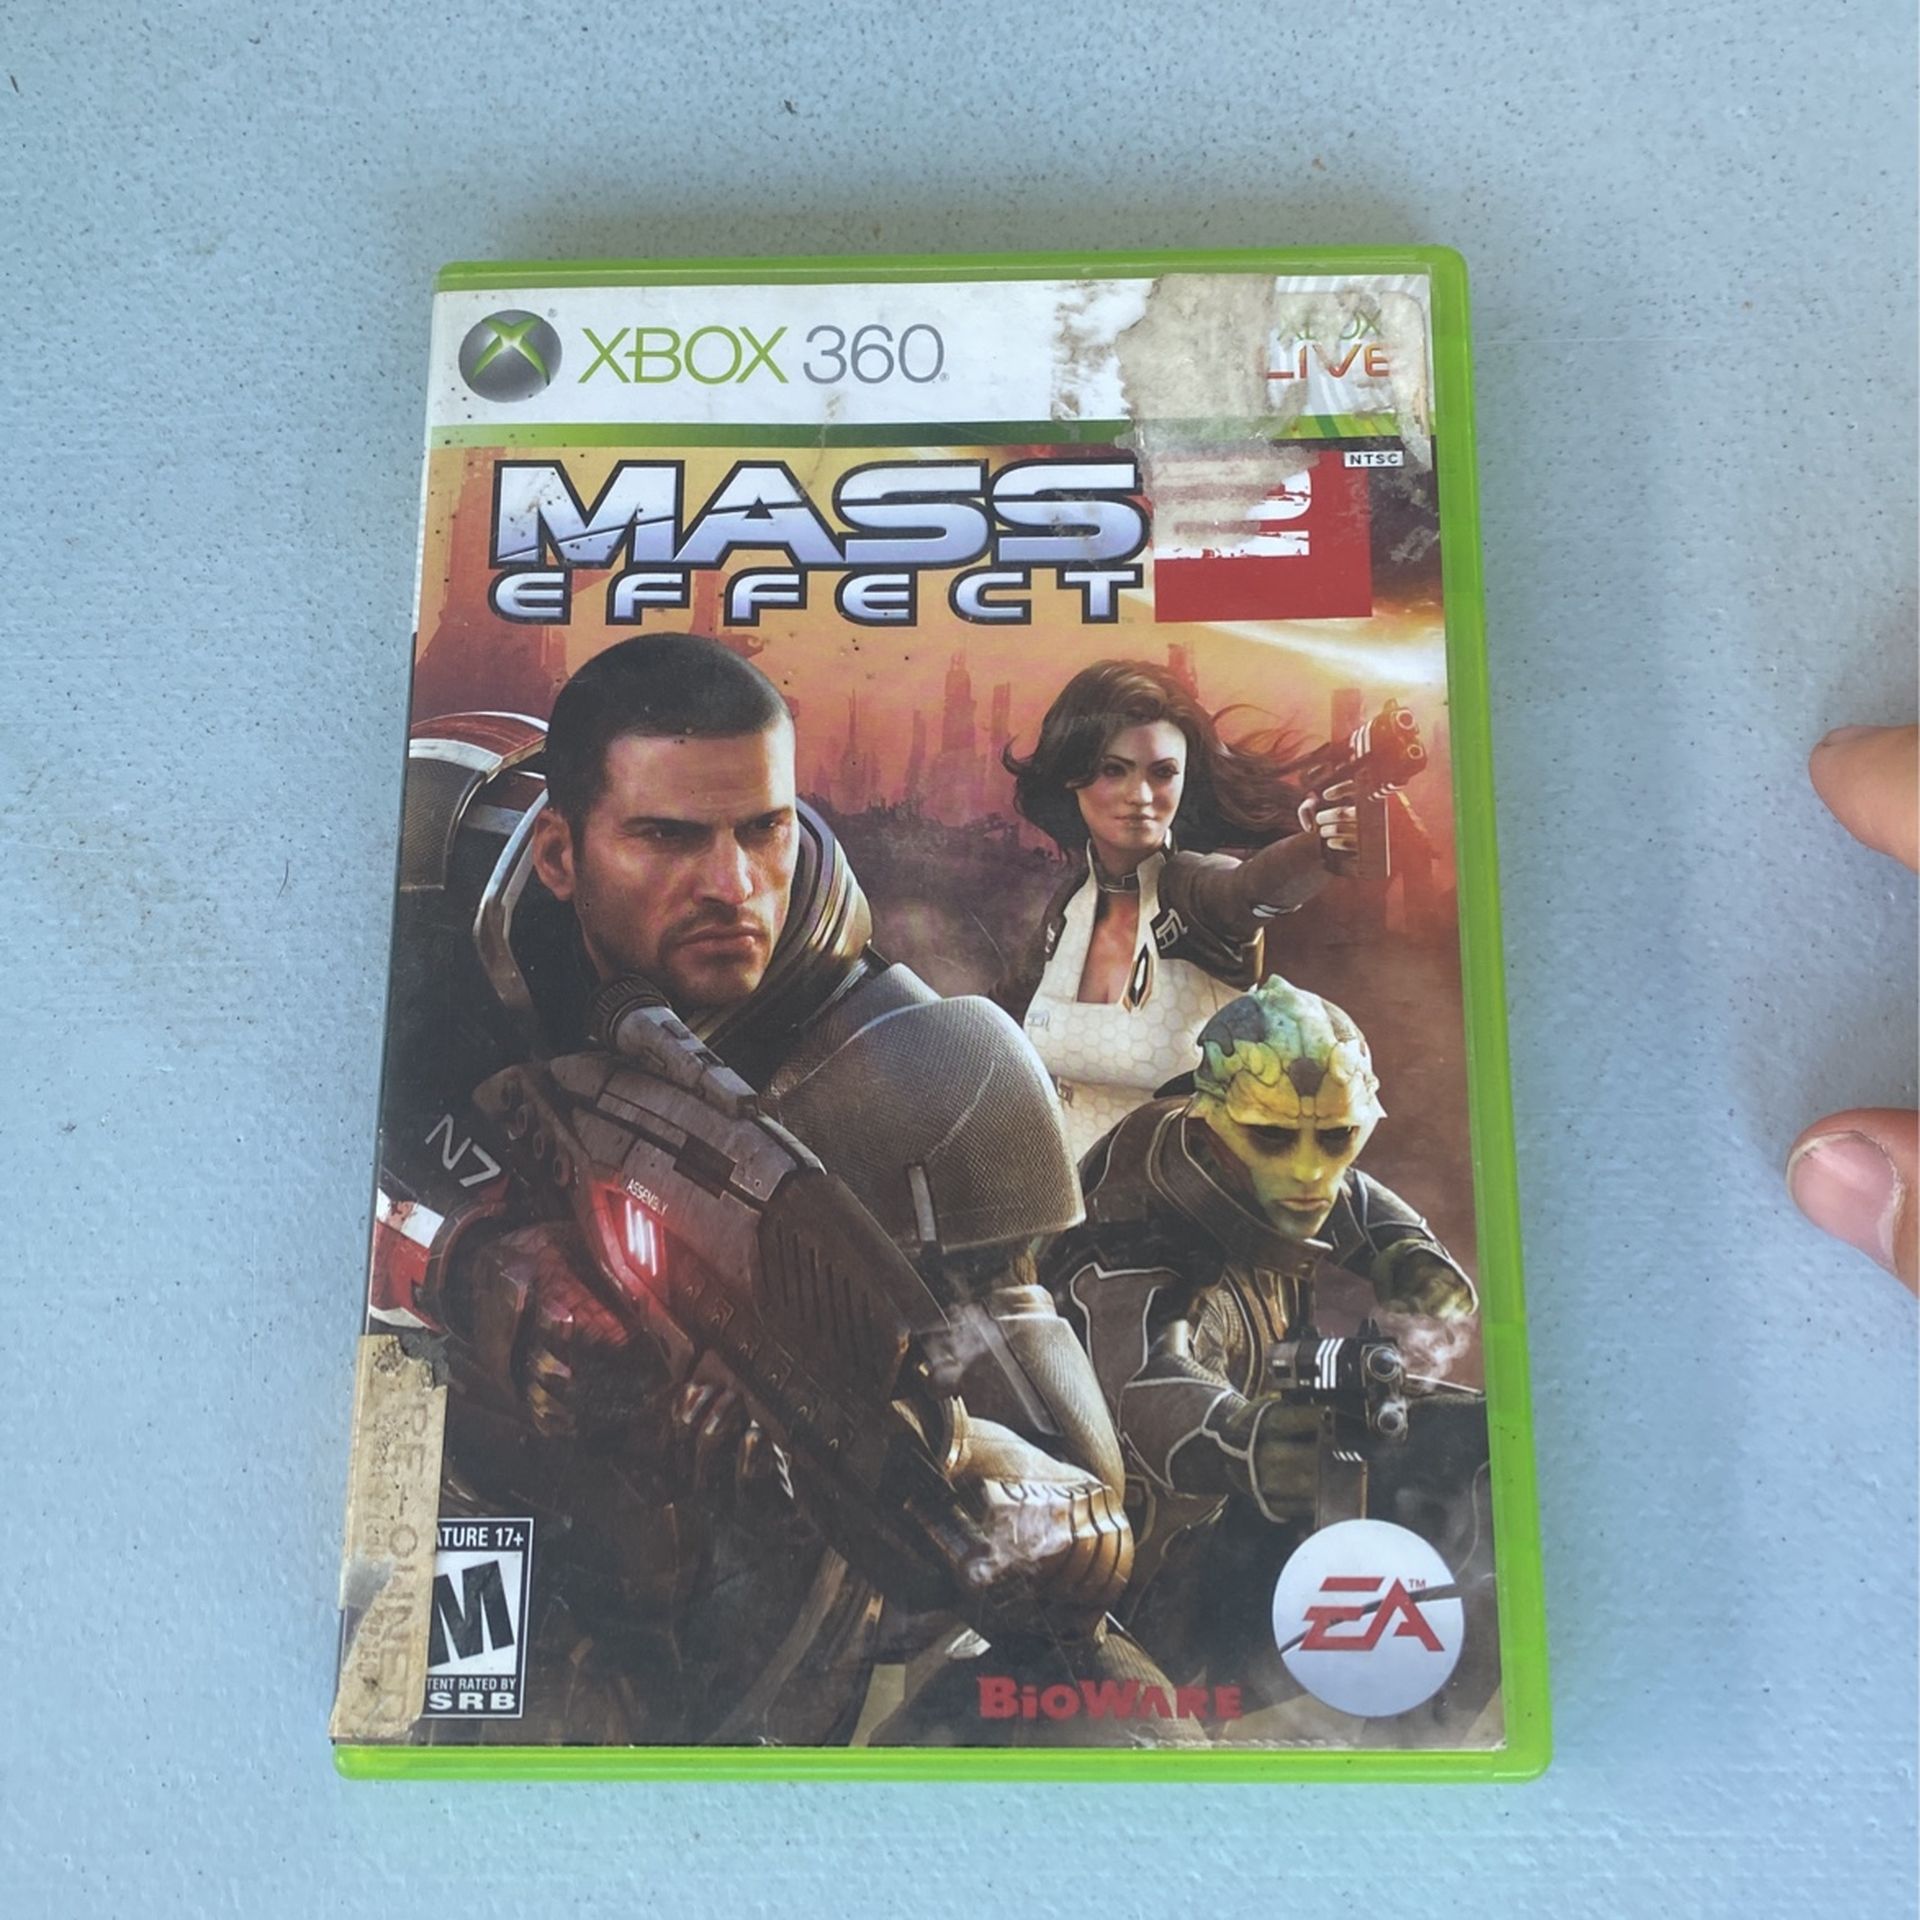 Mass Effect 2 (Microsoft Xbox 360, 2010) 